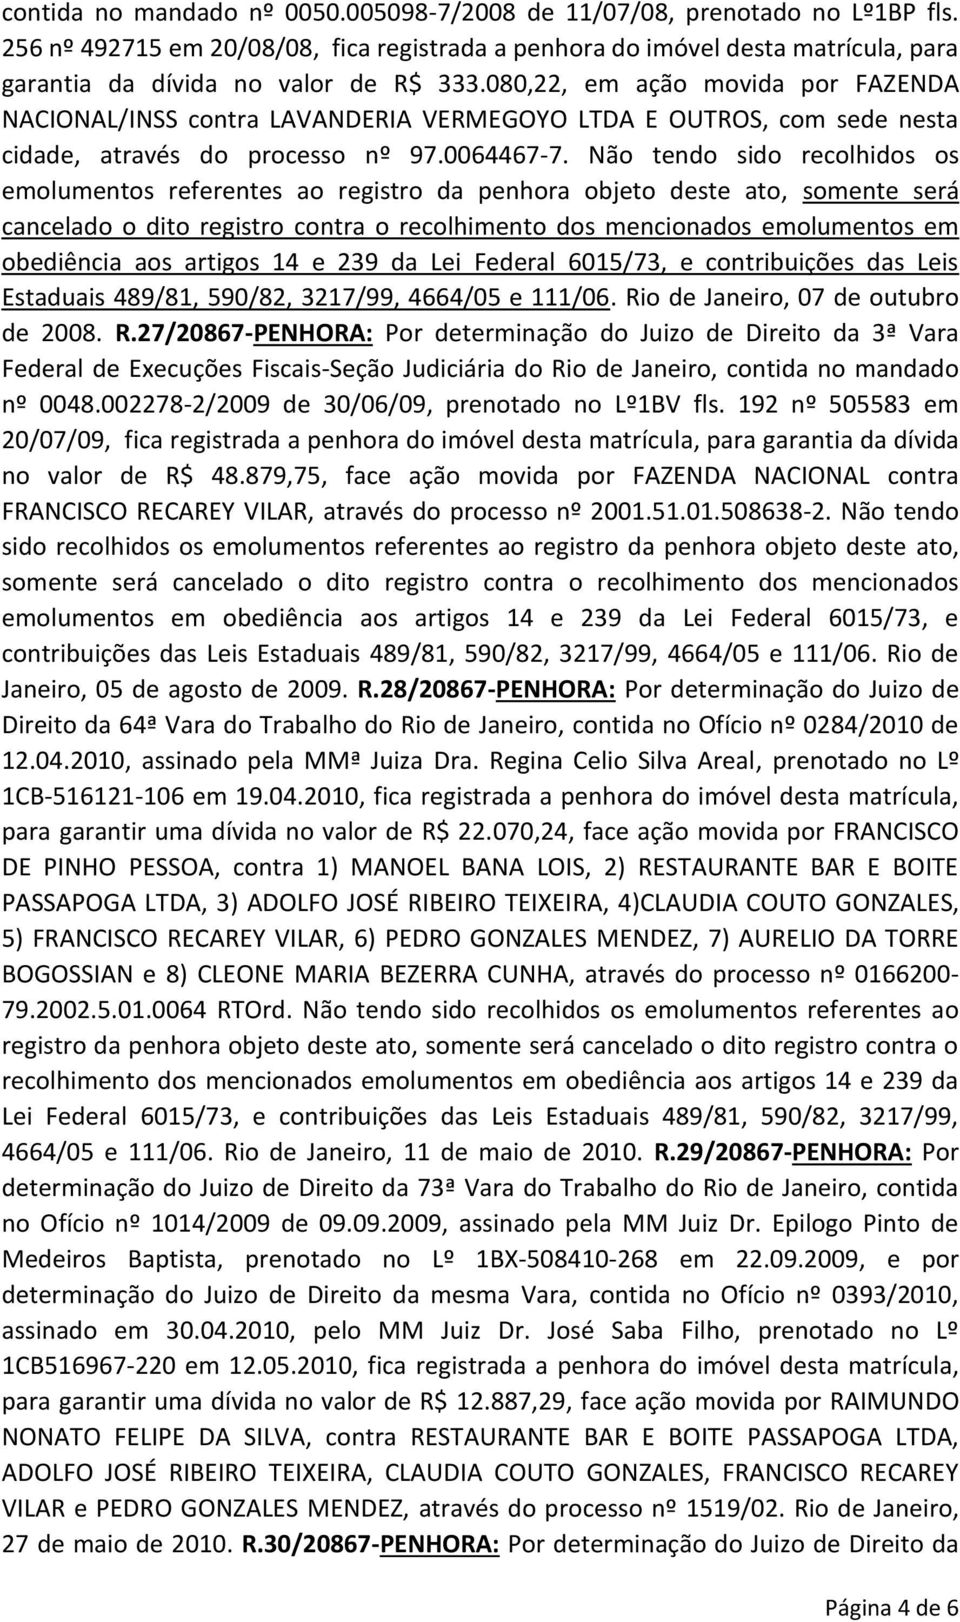 080,22, em ação movida por FAZENDA NACIONAL/INSS contra LAVANDERIA VERMEGOYO LTDA E OUTROS, com sede nesta cidade, através do processo nº 97.0064467-7.